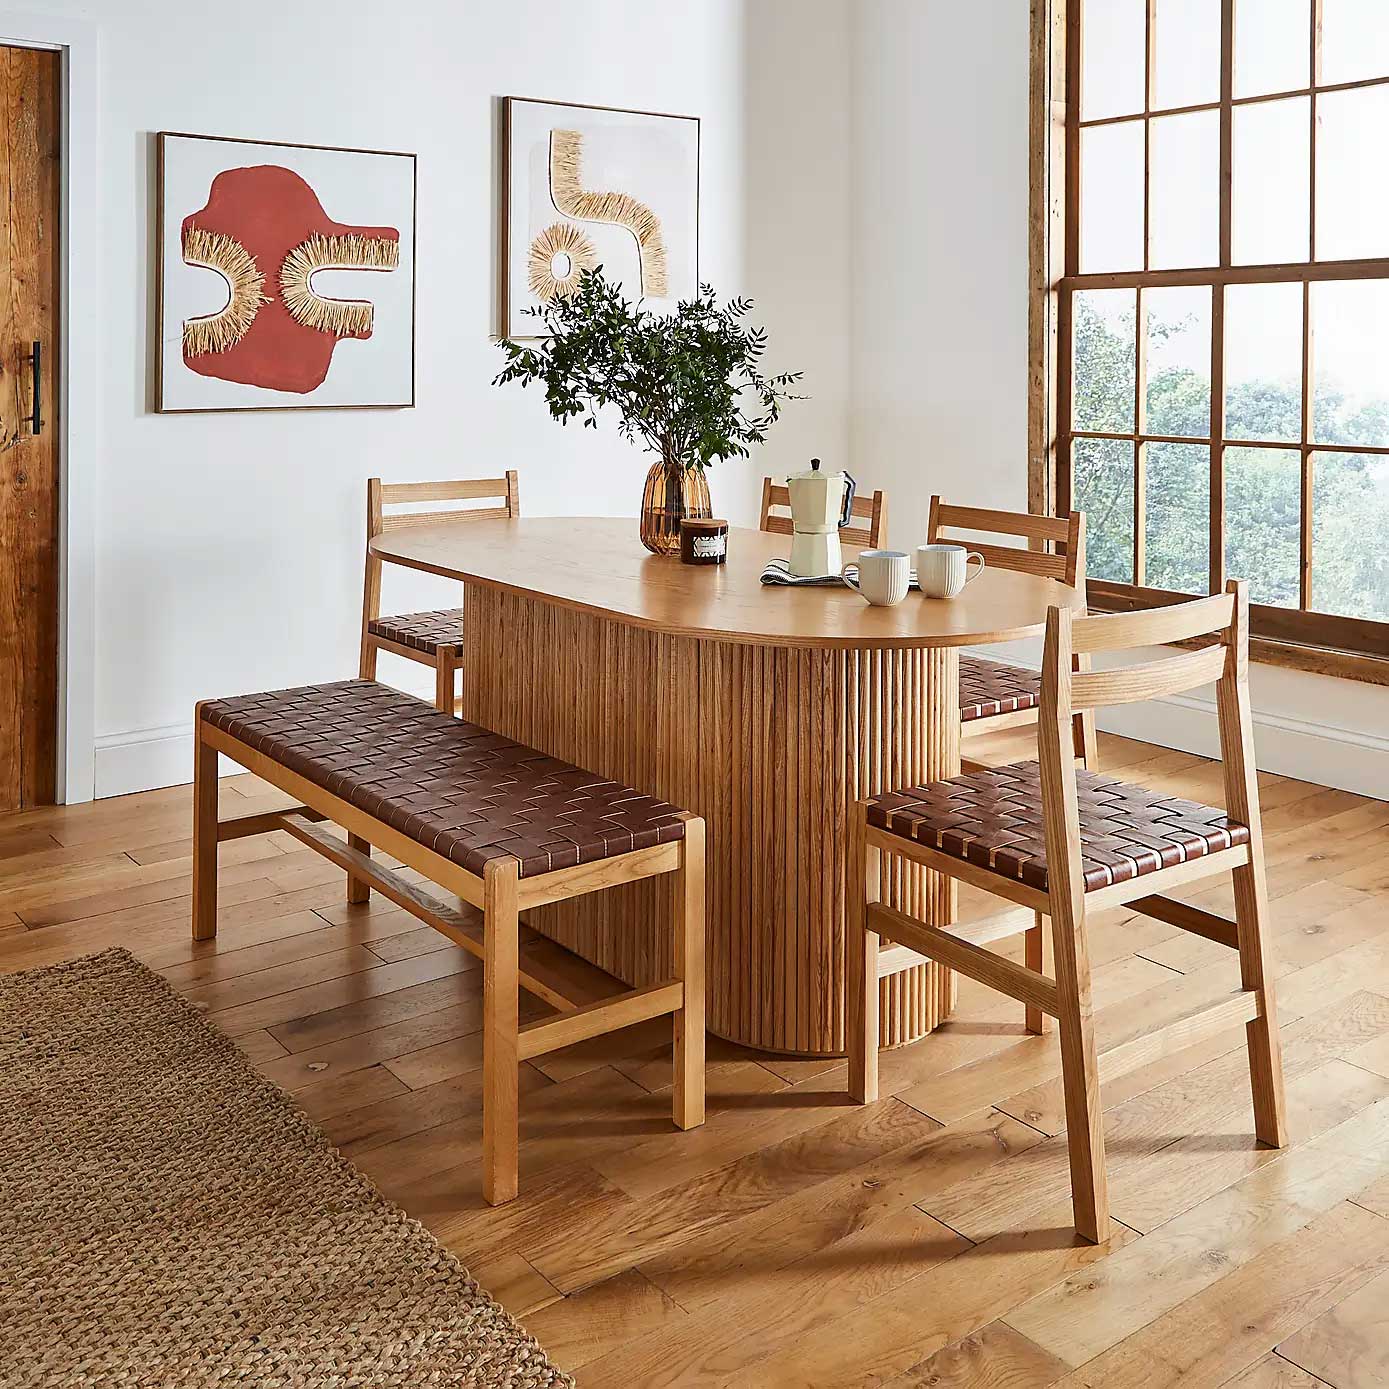 Bộ bàn ăn 6 ghế gỗ sồi (Oak) với thiết kế mặt đá